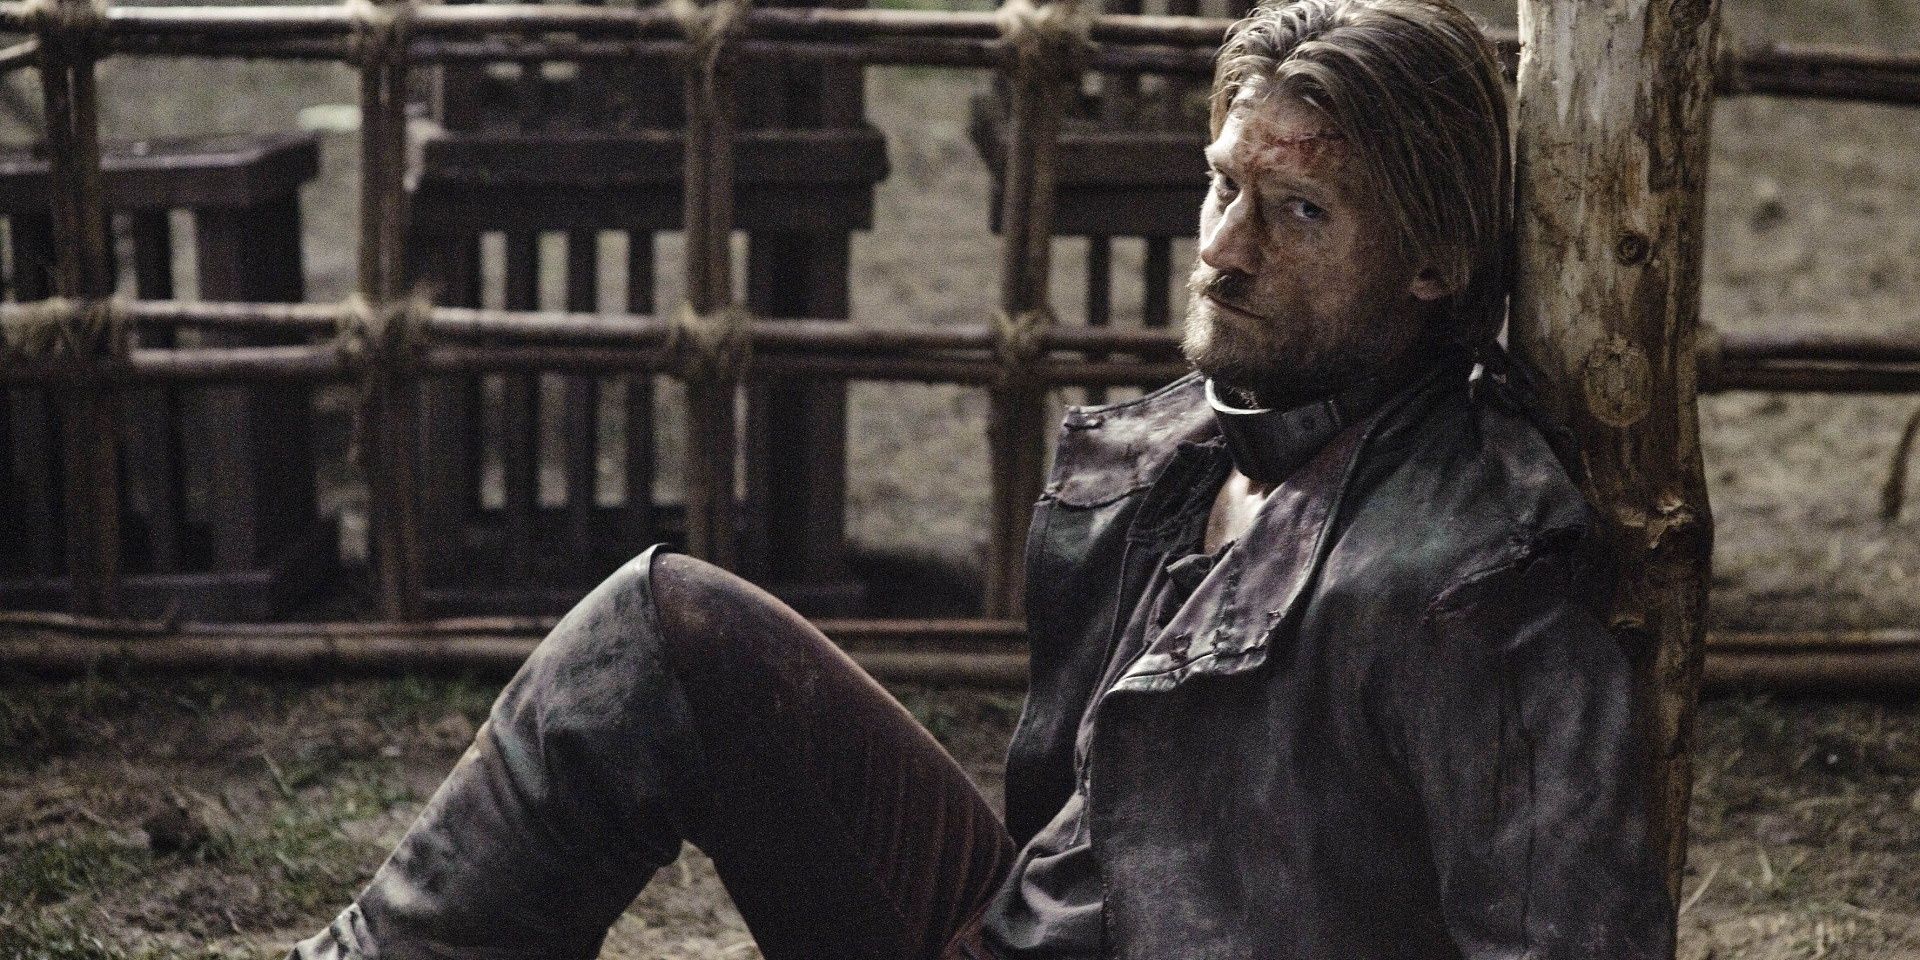 Nikolaj Coster-Waldau as Jaime Lannister imprisoned in Game of Thrones.